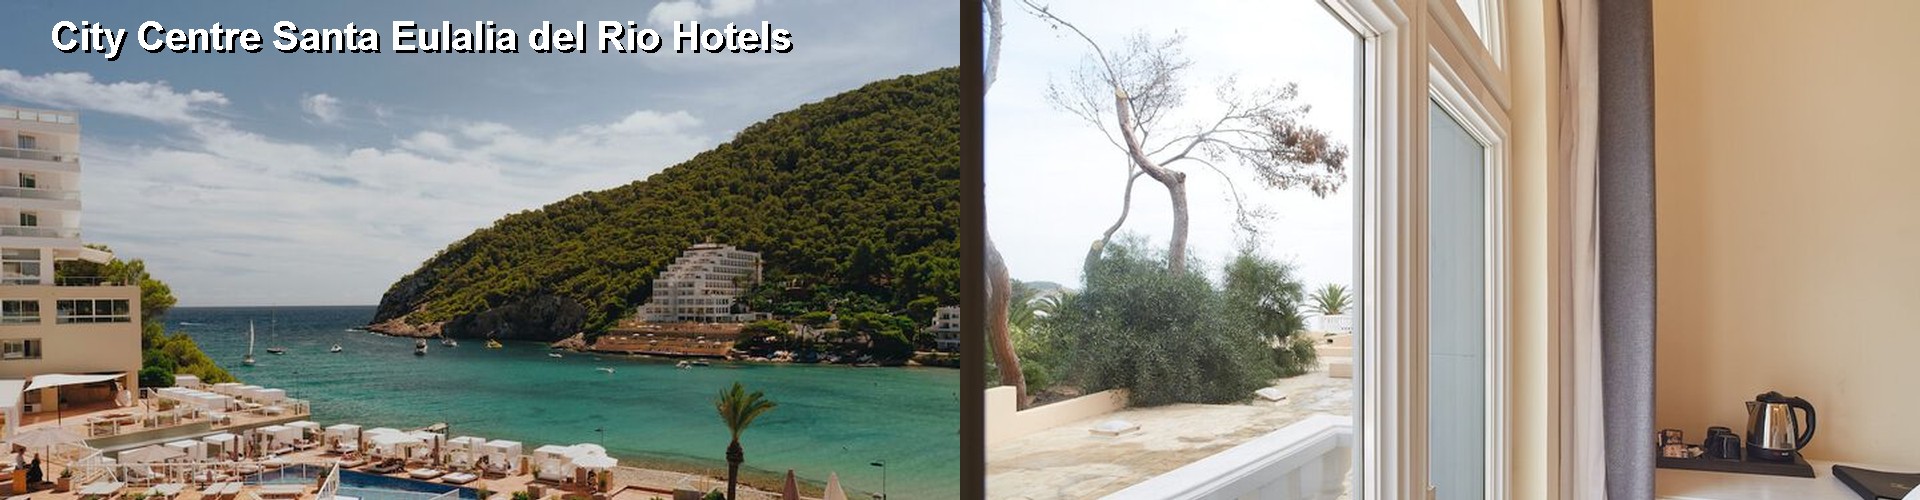 5 Best Hotels near City Centre Santa Eulalia del Rio